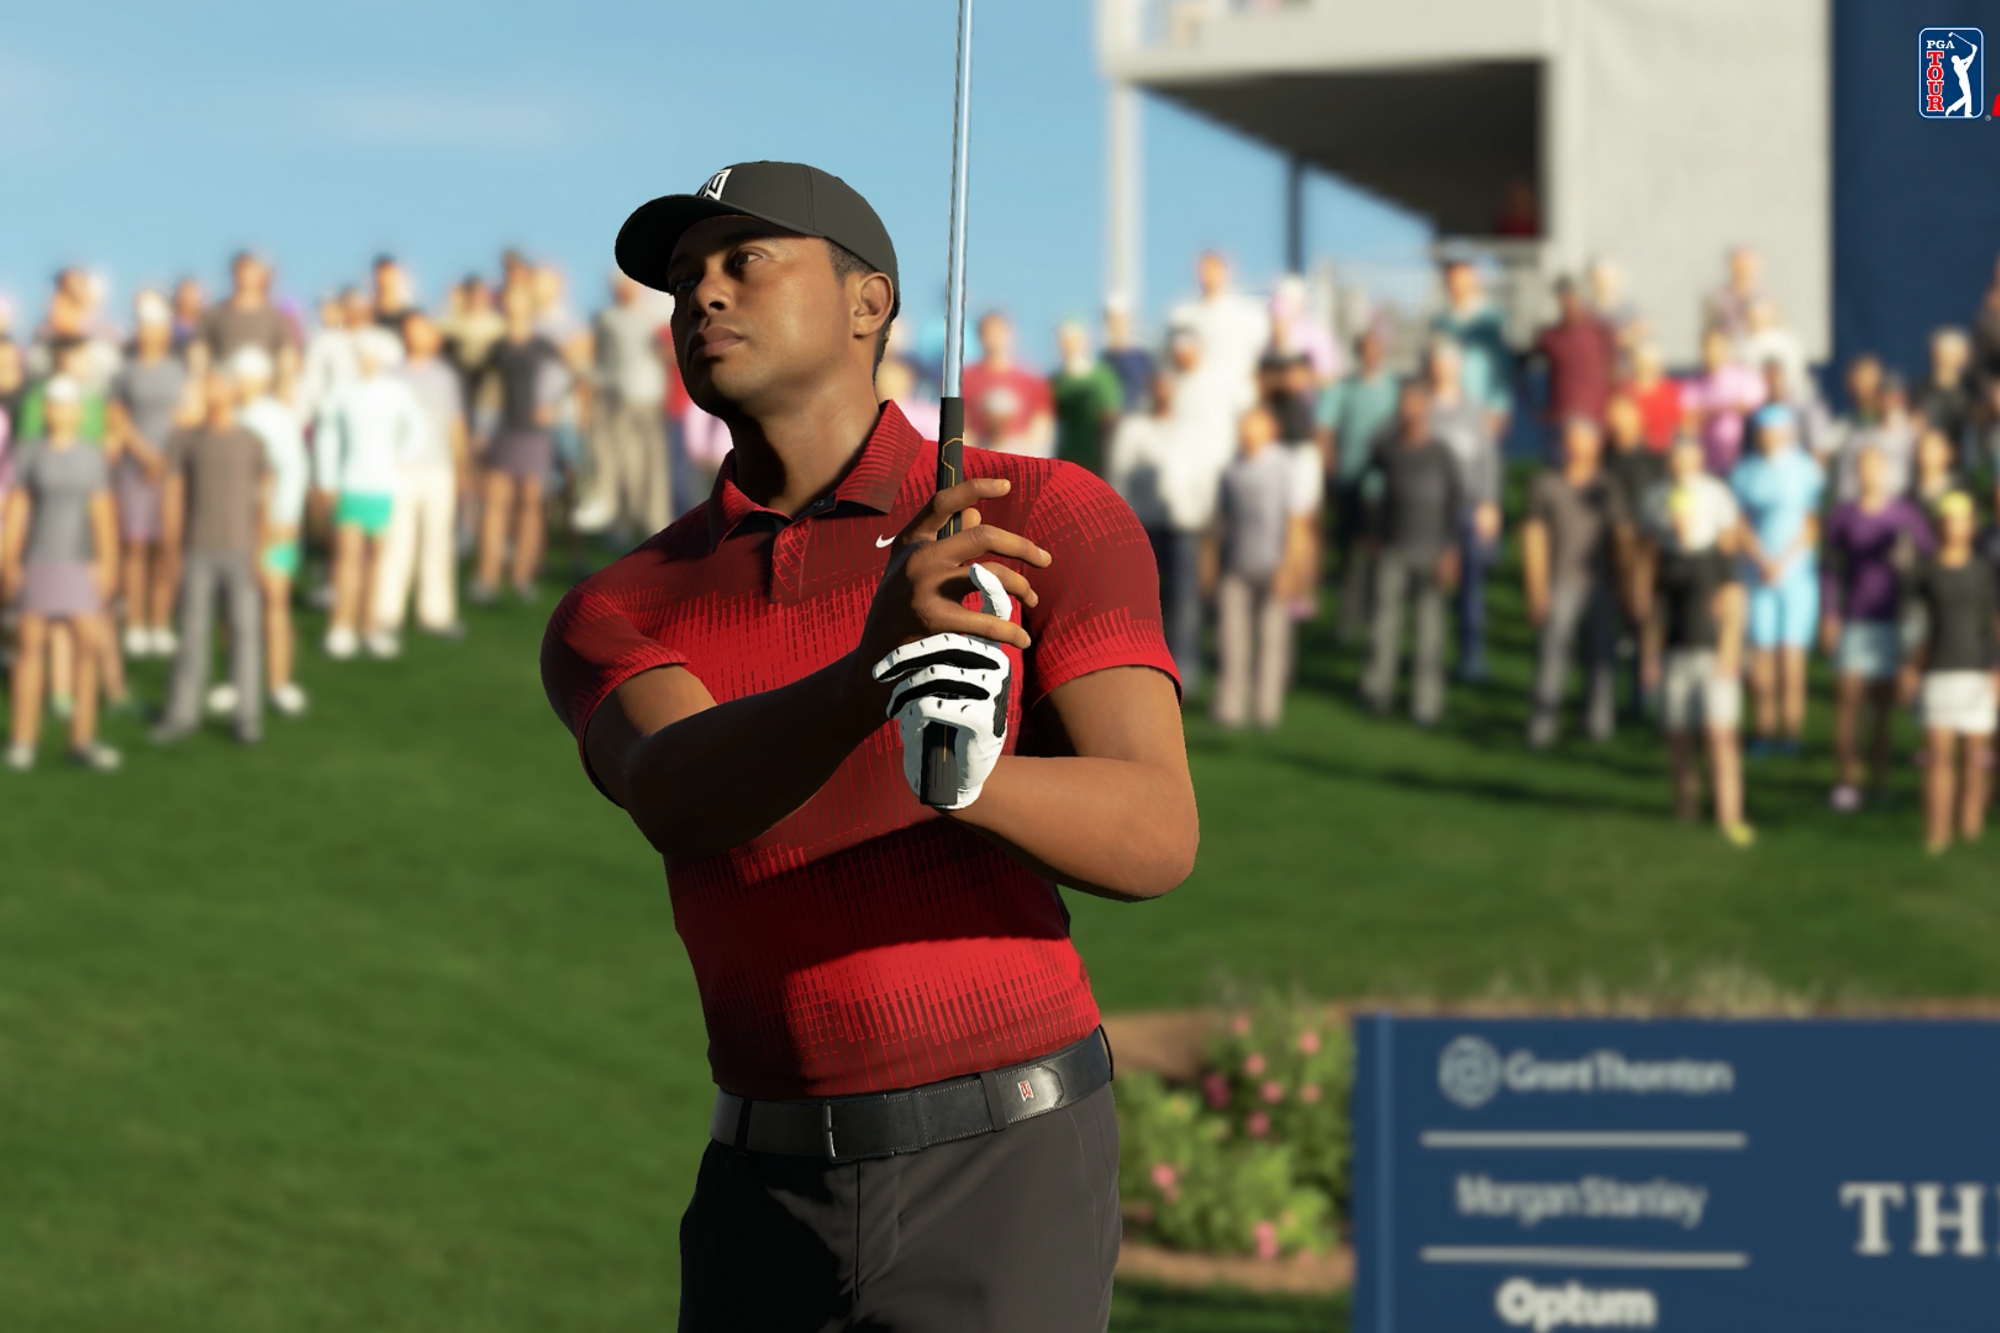 Tiger Woods PGA Tour 2K23